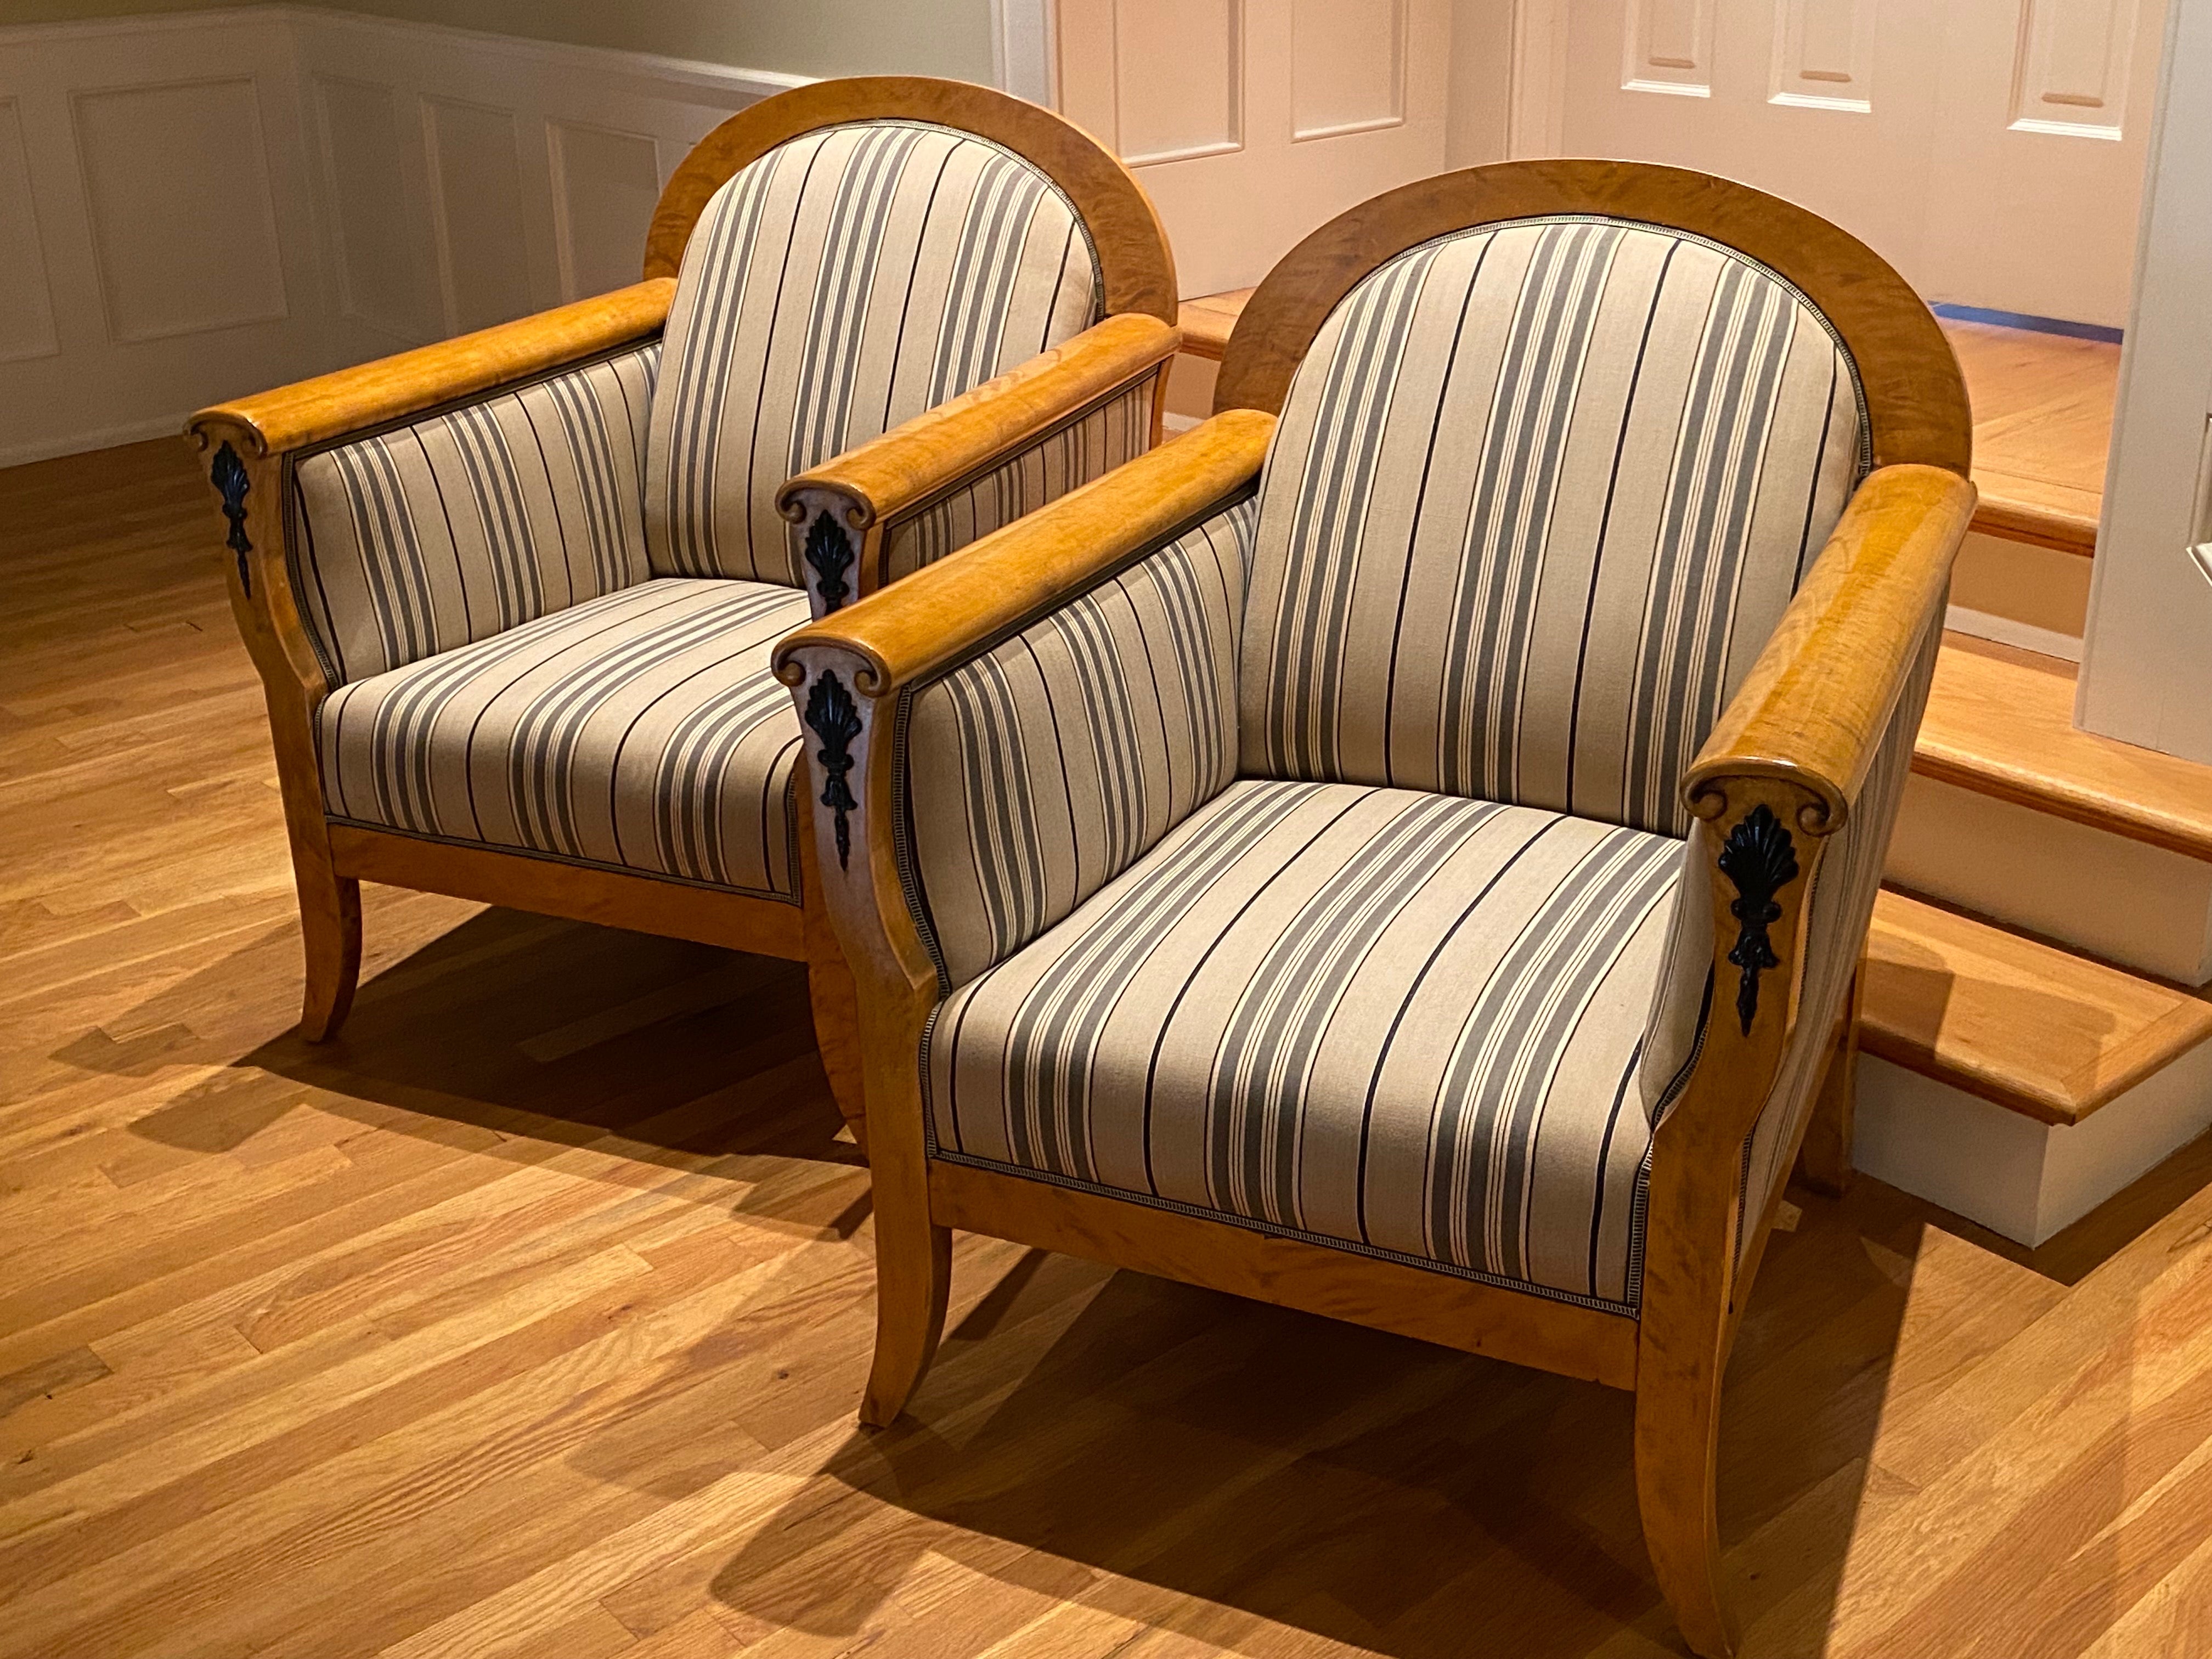 Paire de fauteuils Biedermeier en bouleau d'Europe du Nord avec détails en bois ébonisé, début des années 1900. 
Assortie à un canapé du même style dans une autre annonce, cette belle paire de chaises longues est d'un raffinement simplifié. Le début